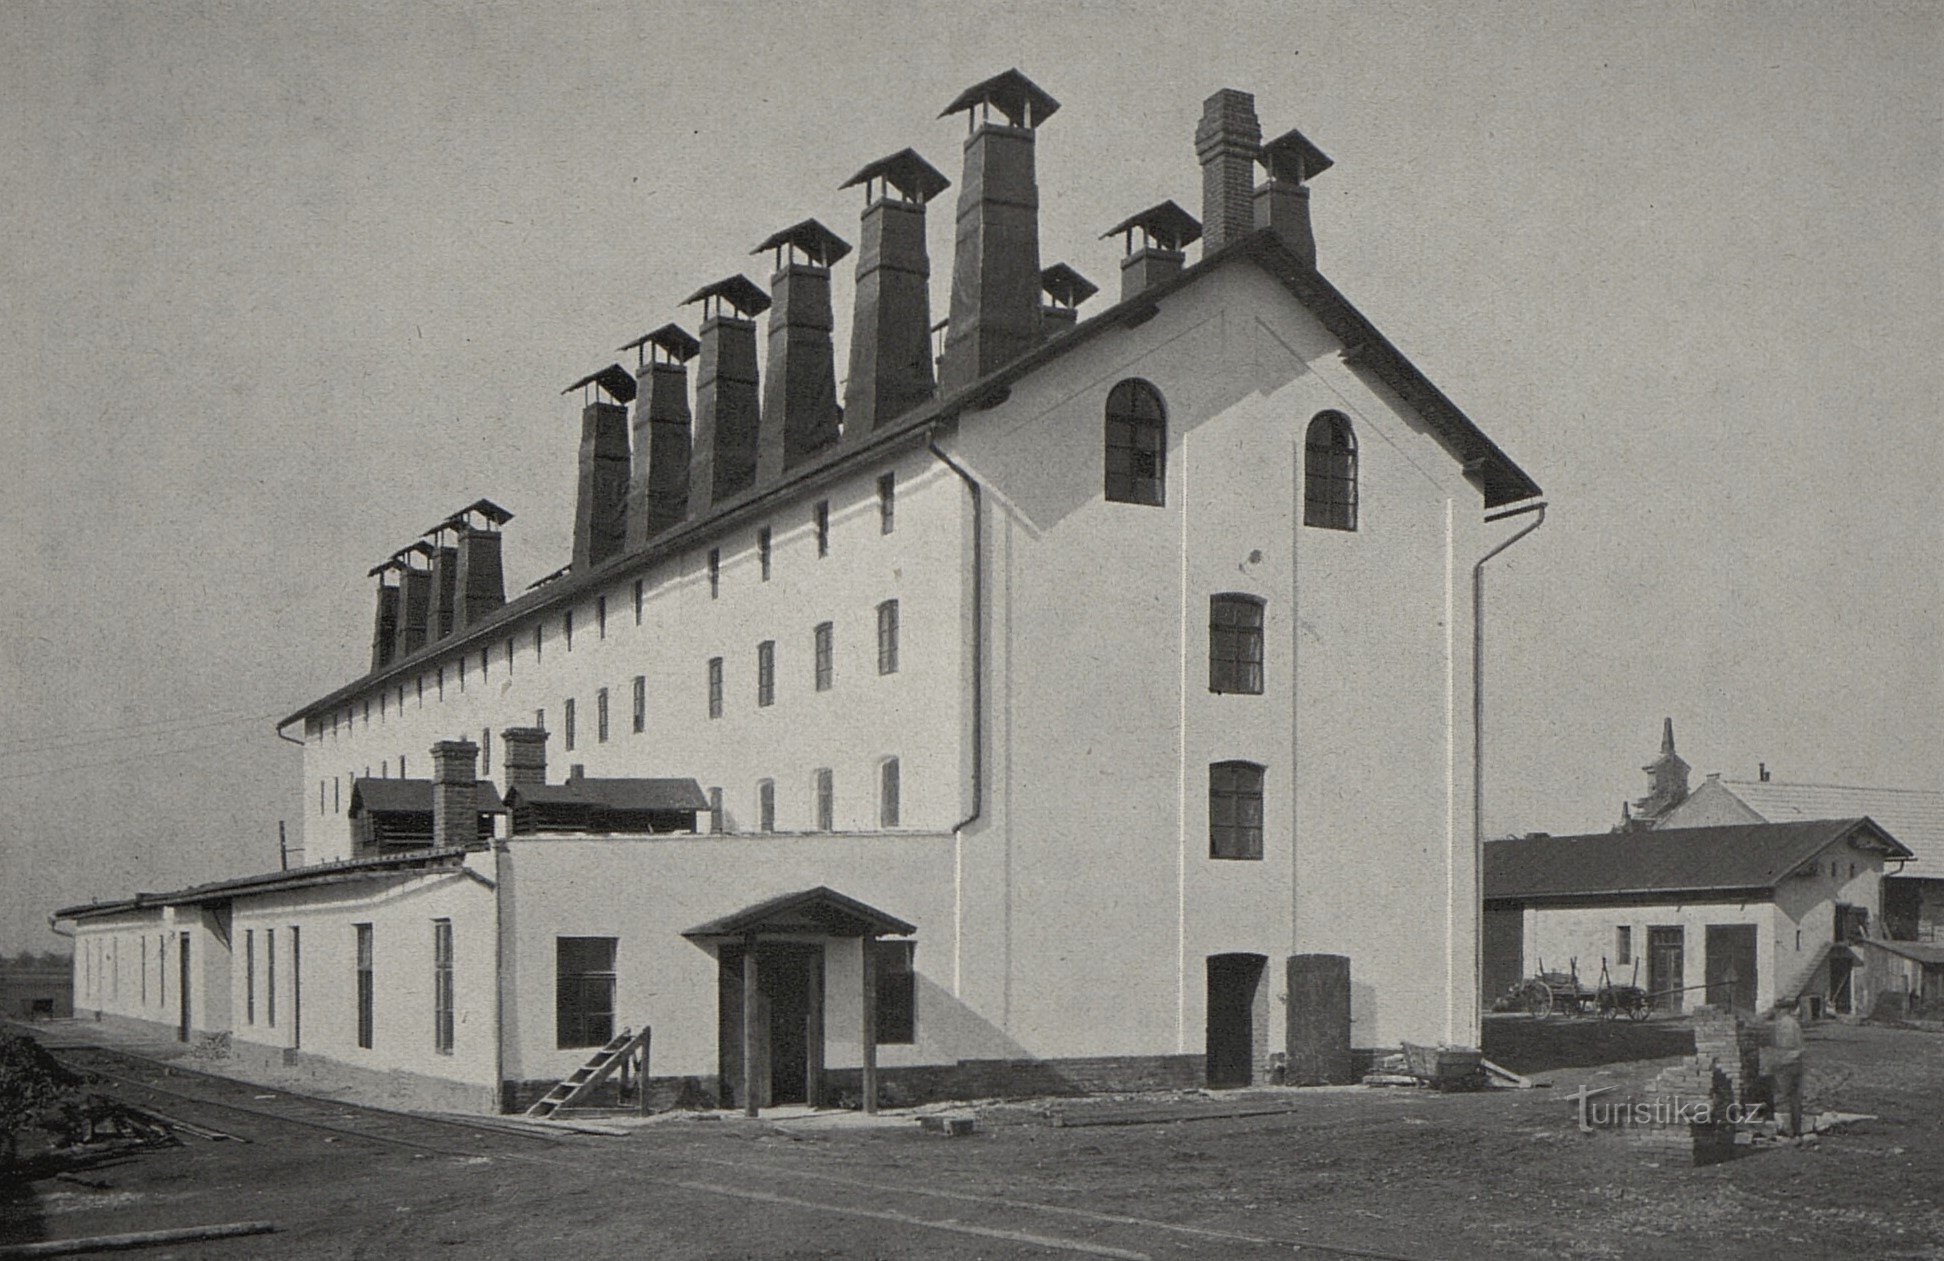 Genossenschaftstrockner für Chicorée (Praskačka, Mitte der 20er Jahre des 20. Jahrhunderts)